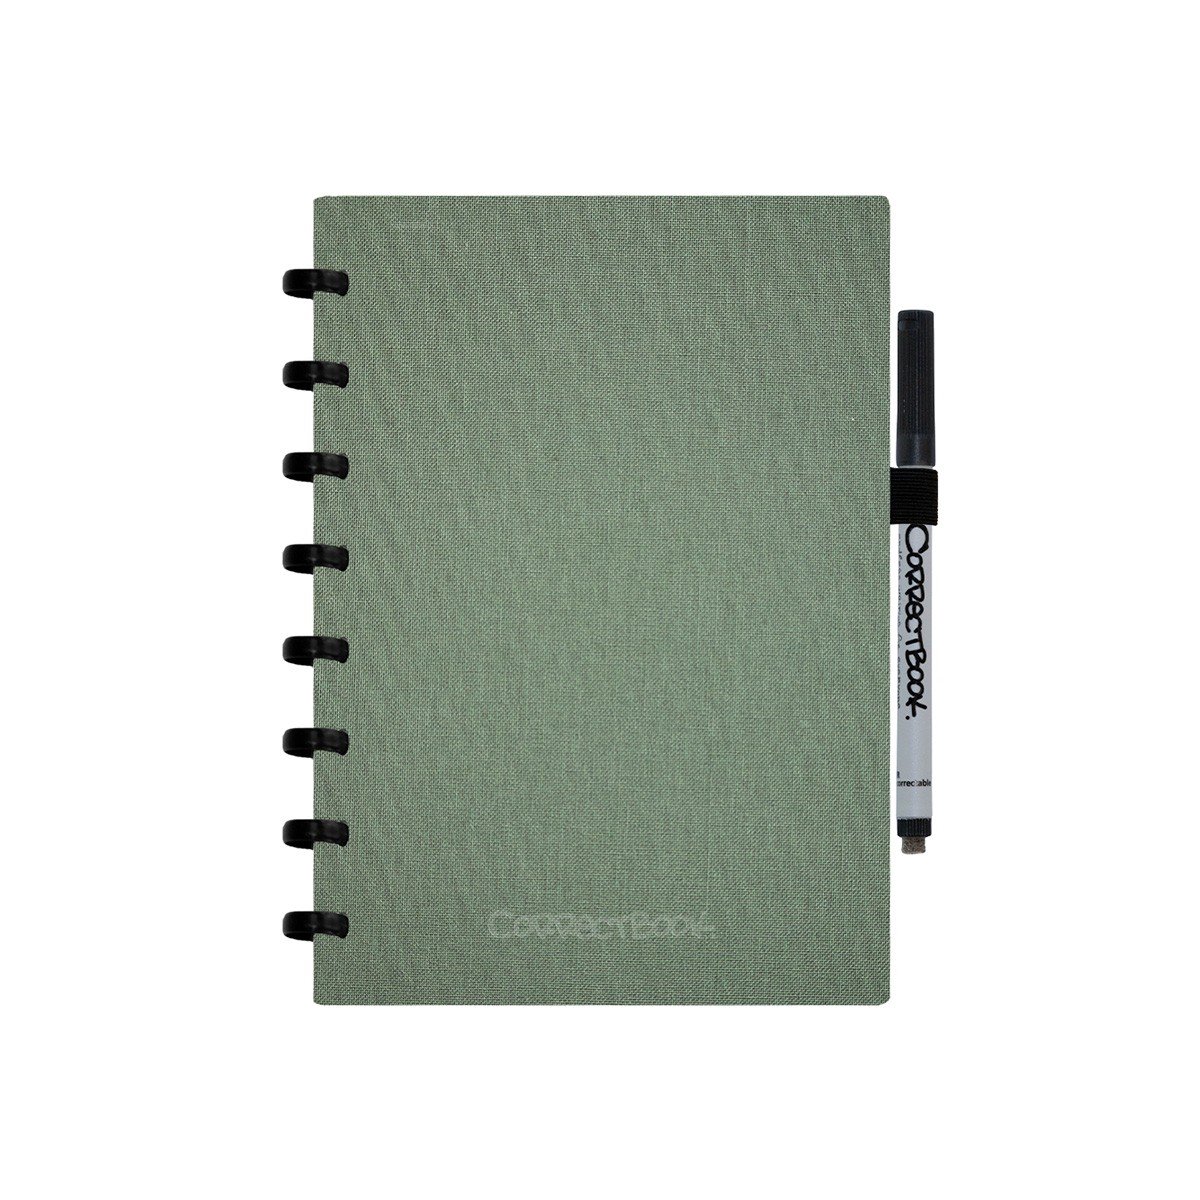 Correctbook Linnen Hardcover A5 Olive Green-Gelinieerd - Uitwisbaar / Whiteboard Notitieboek